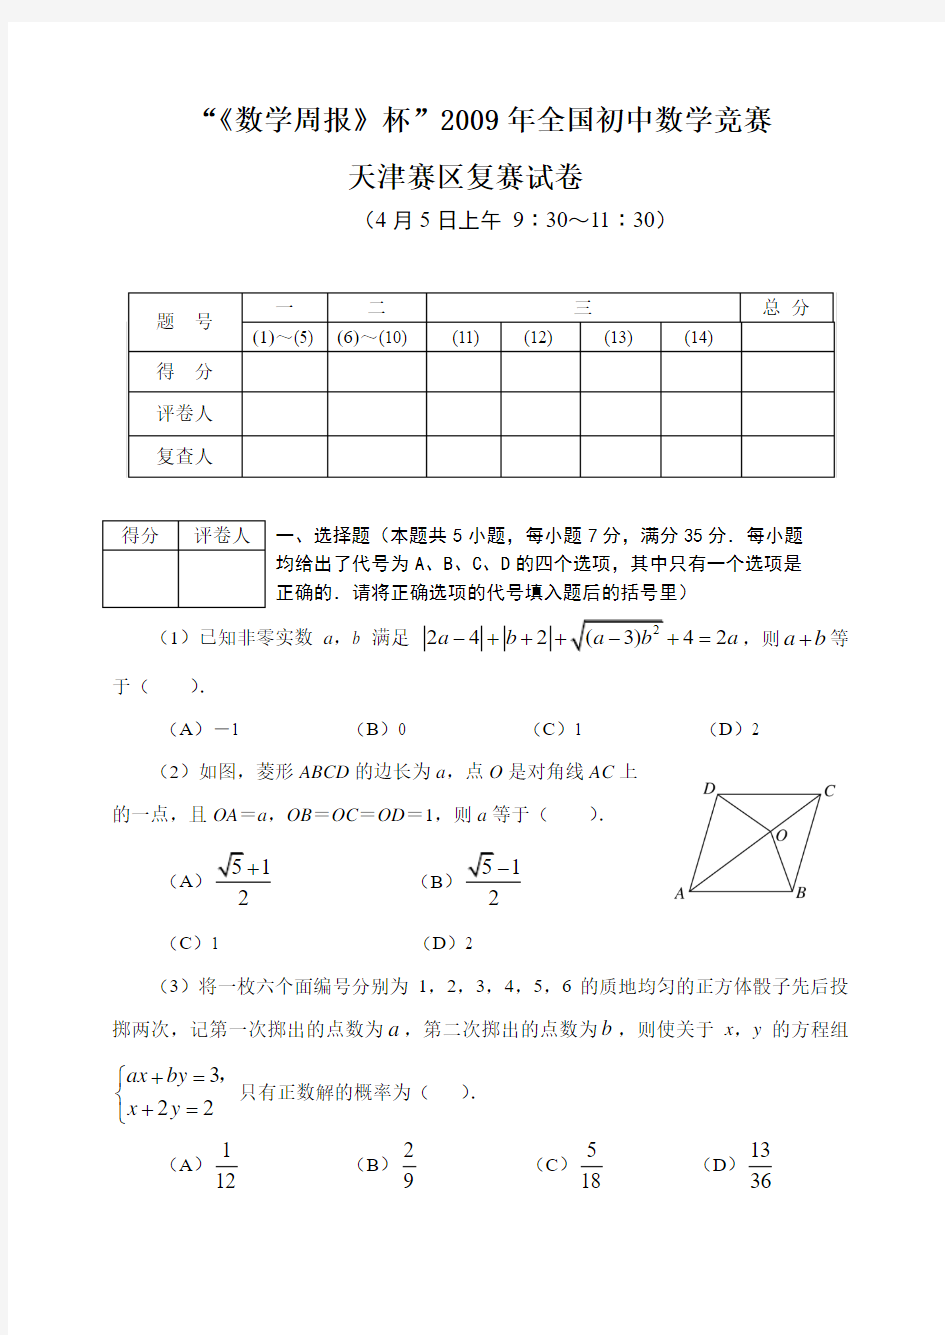 2009年全国初中数学竞赛(天津赛区)复赛试题